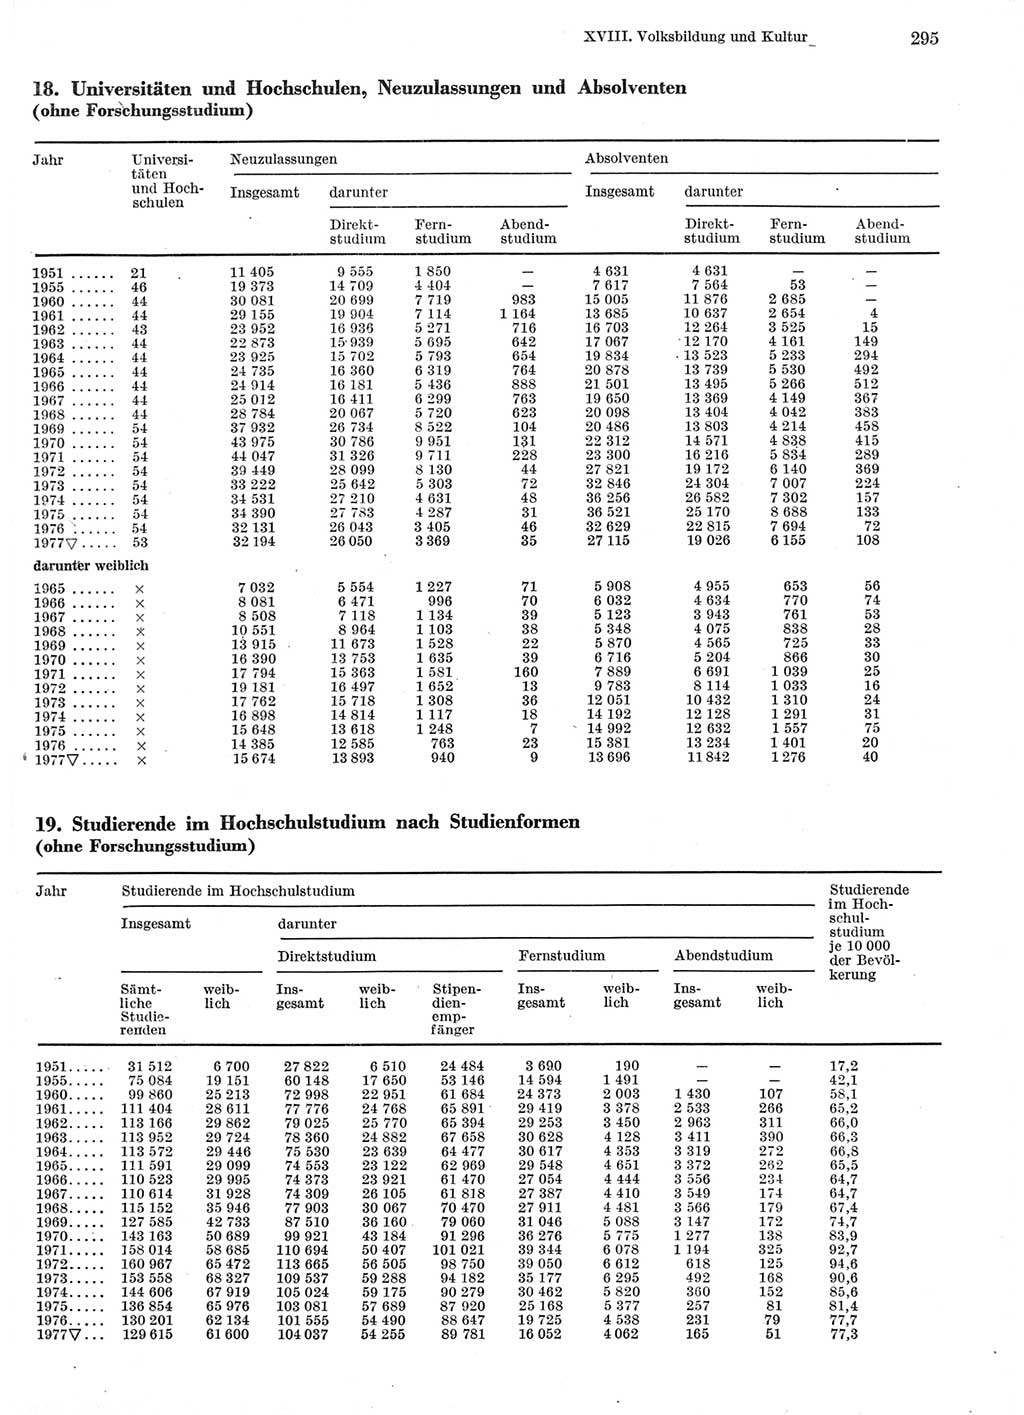 Statistisches Jahrbuch der Deutschen Demokratischen Republik (DDR) 1978, Seite 295 (Stat. Jb. DDR 1978, S. 295)